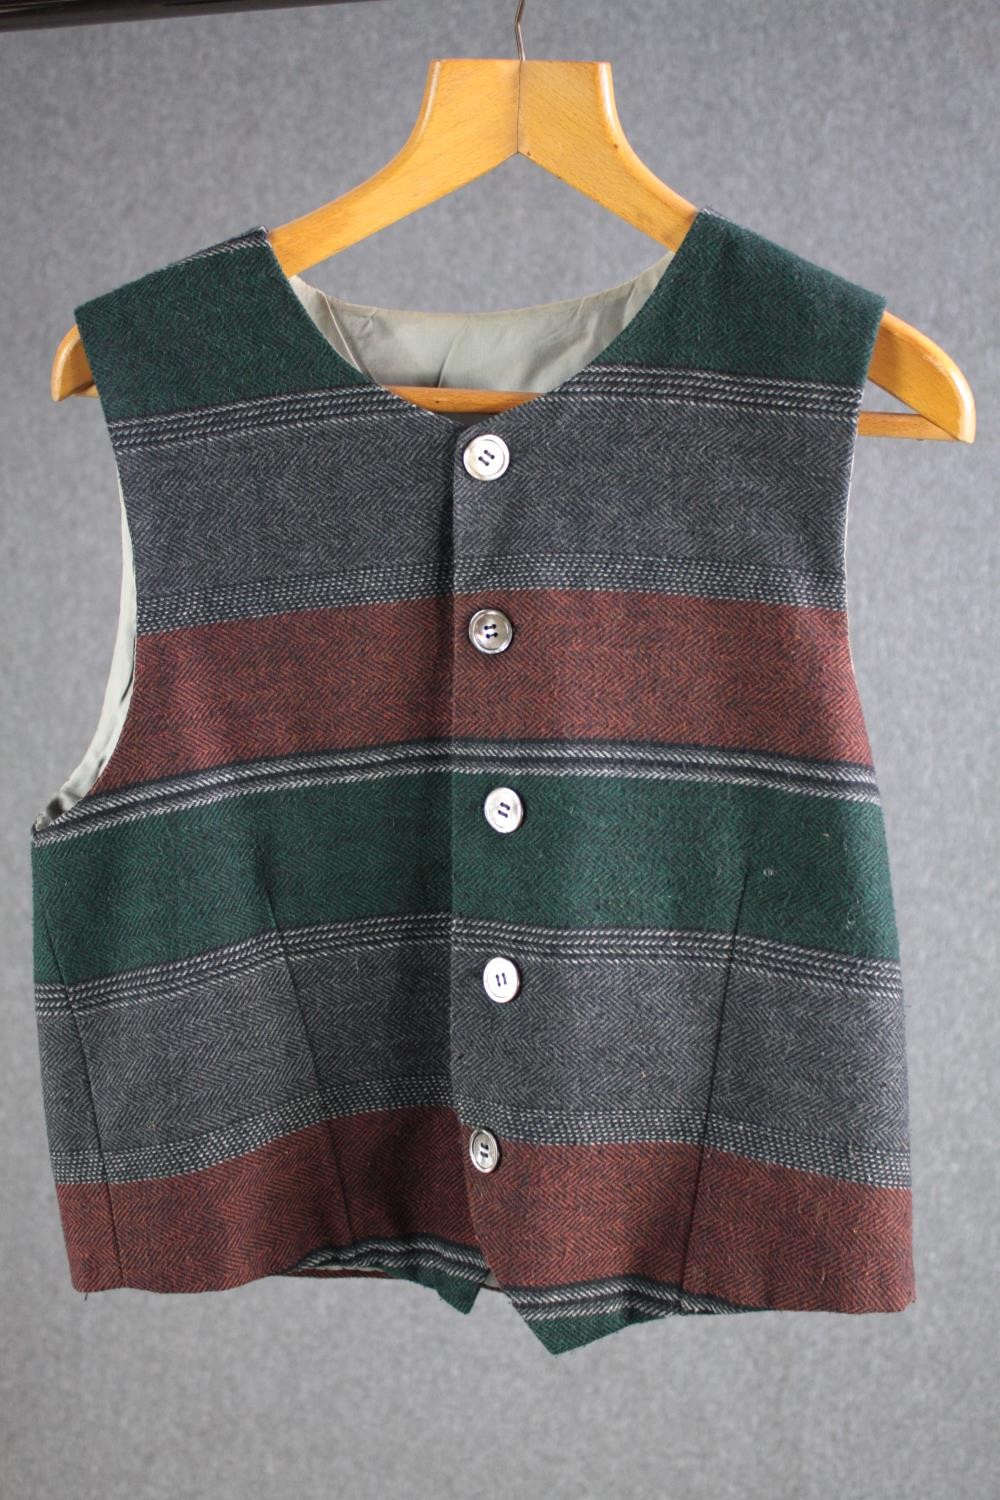 A woollen mix tartan waistcoat.